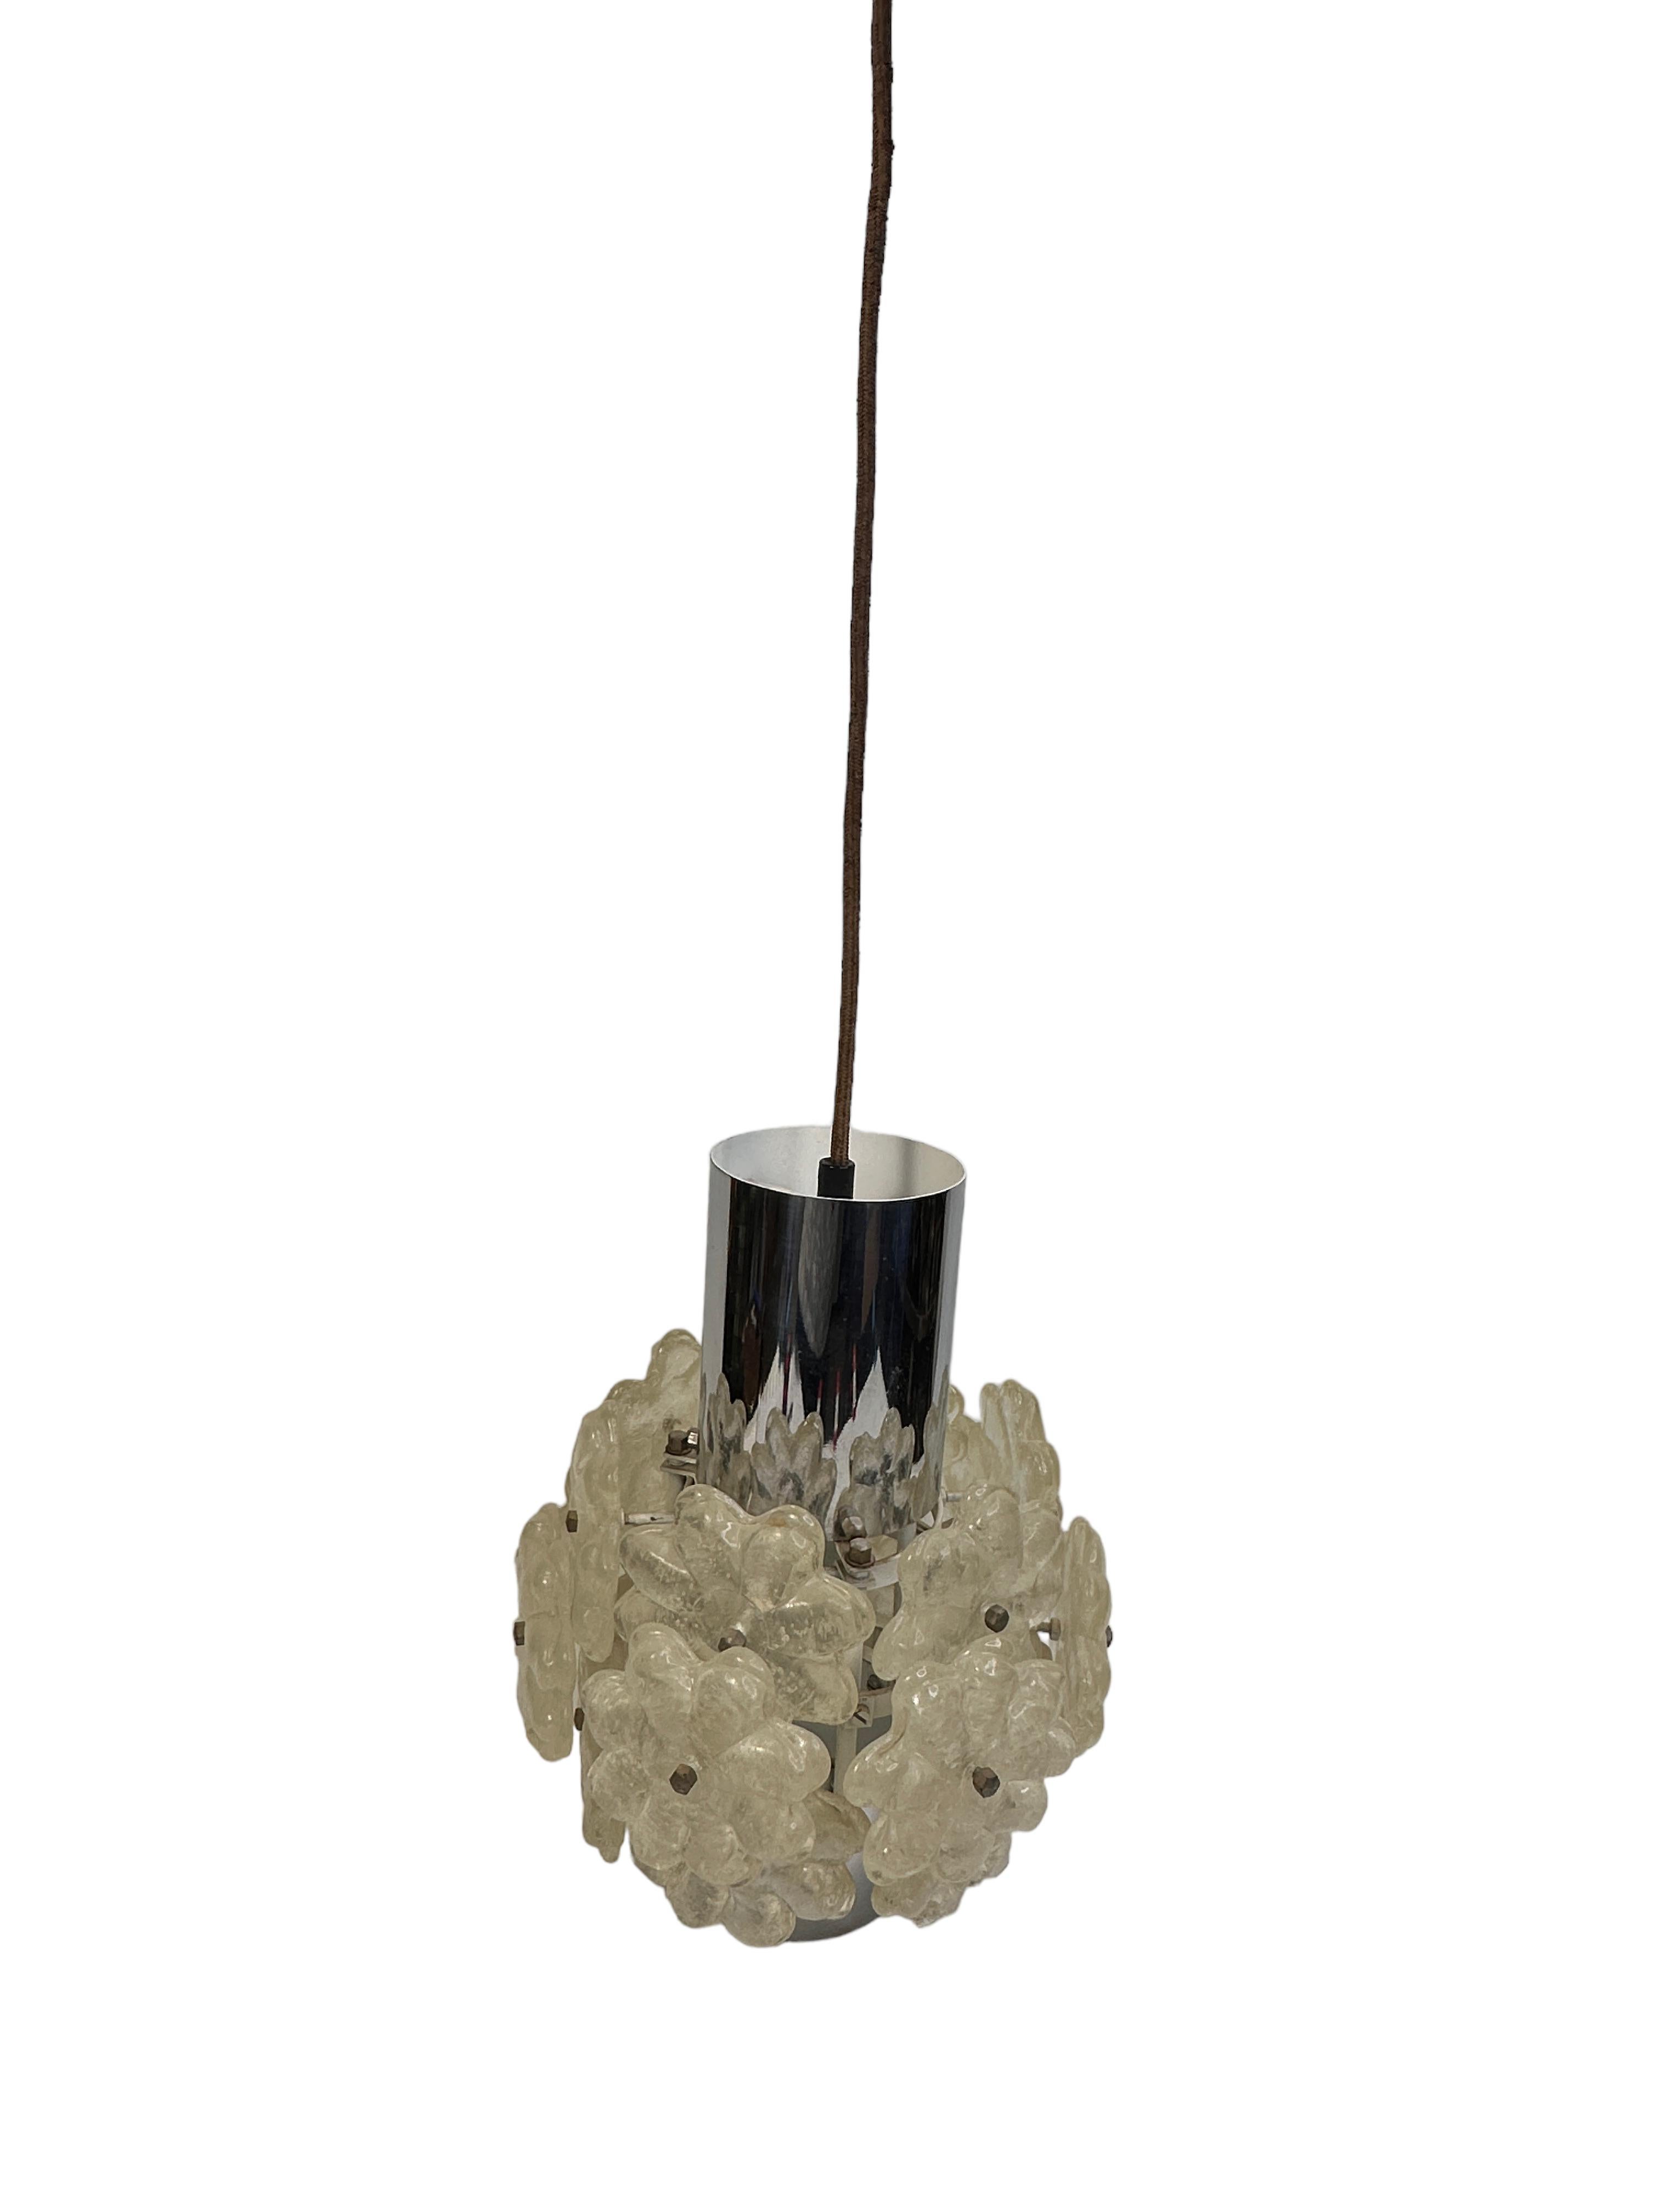 Zylindrische, verchromte Pendelleuchte mit Lucite-Blumenbüscheln von Kalmar Austria. Es besteht aus einem Design im Mid-Century Modern-Stil. Die Leuchte benötigt eine europäische E27 / 110 Volt Edison-Glühbirne, bis zu 60 Watt. Gefunden bei einem